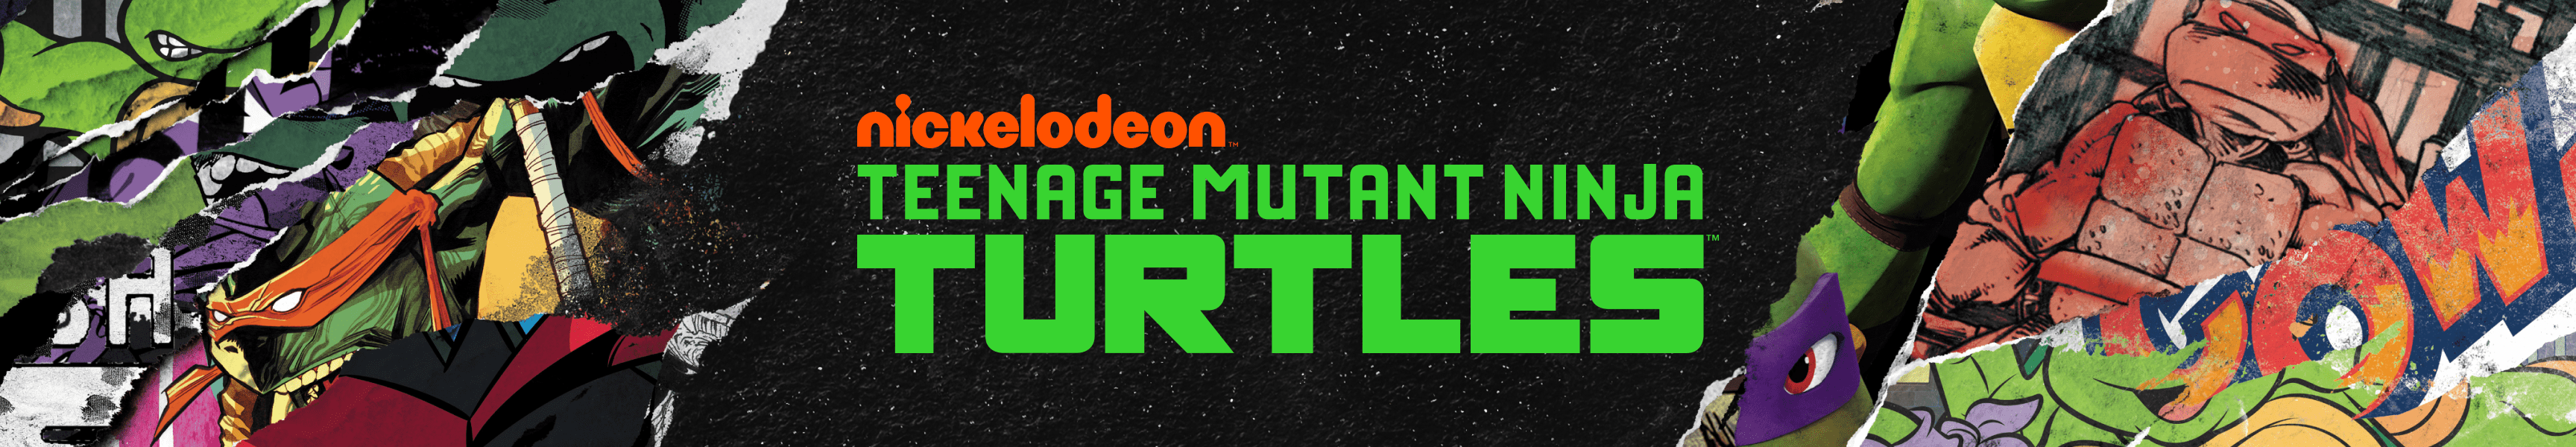 Teenage Mutant Ninja Turtles Accessories